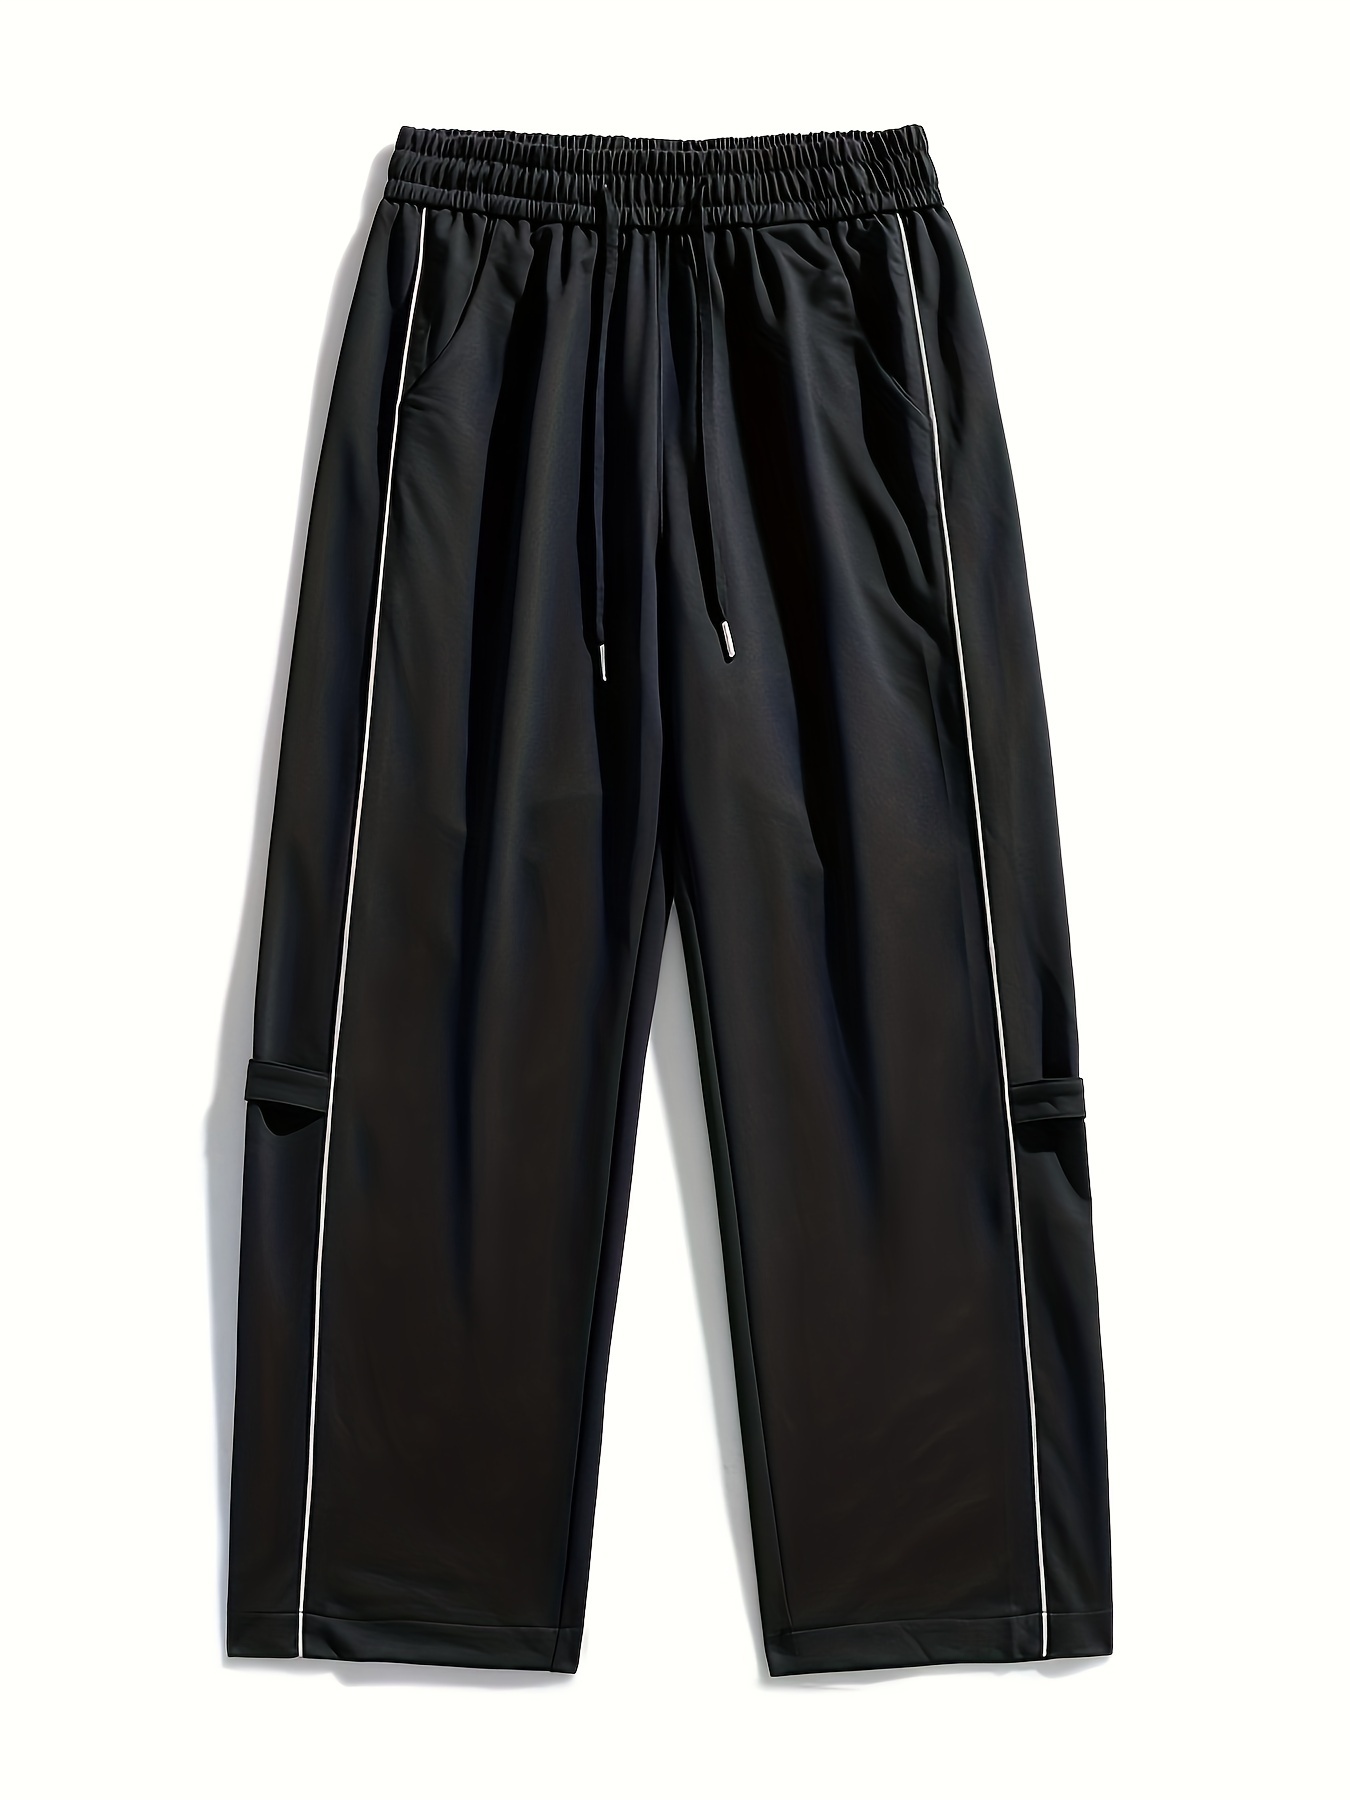 Drawstring Solid Capri Pants Casual Versatile Daily Pants - Temu